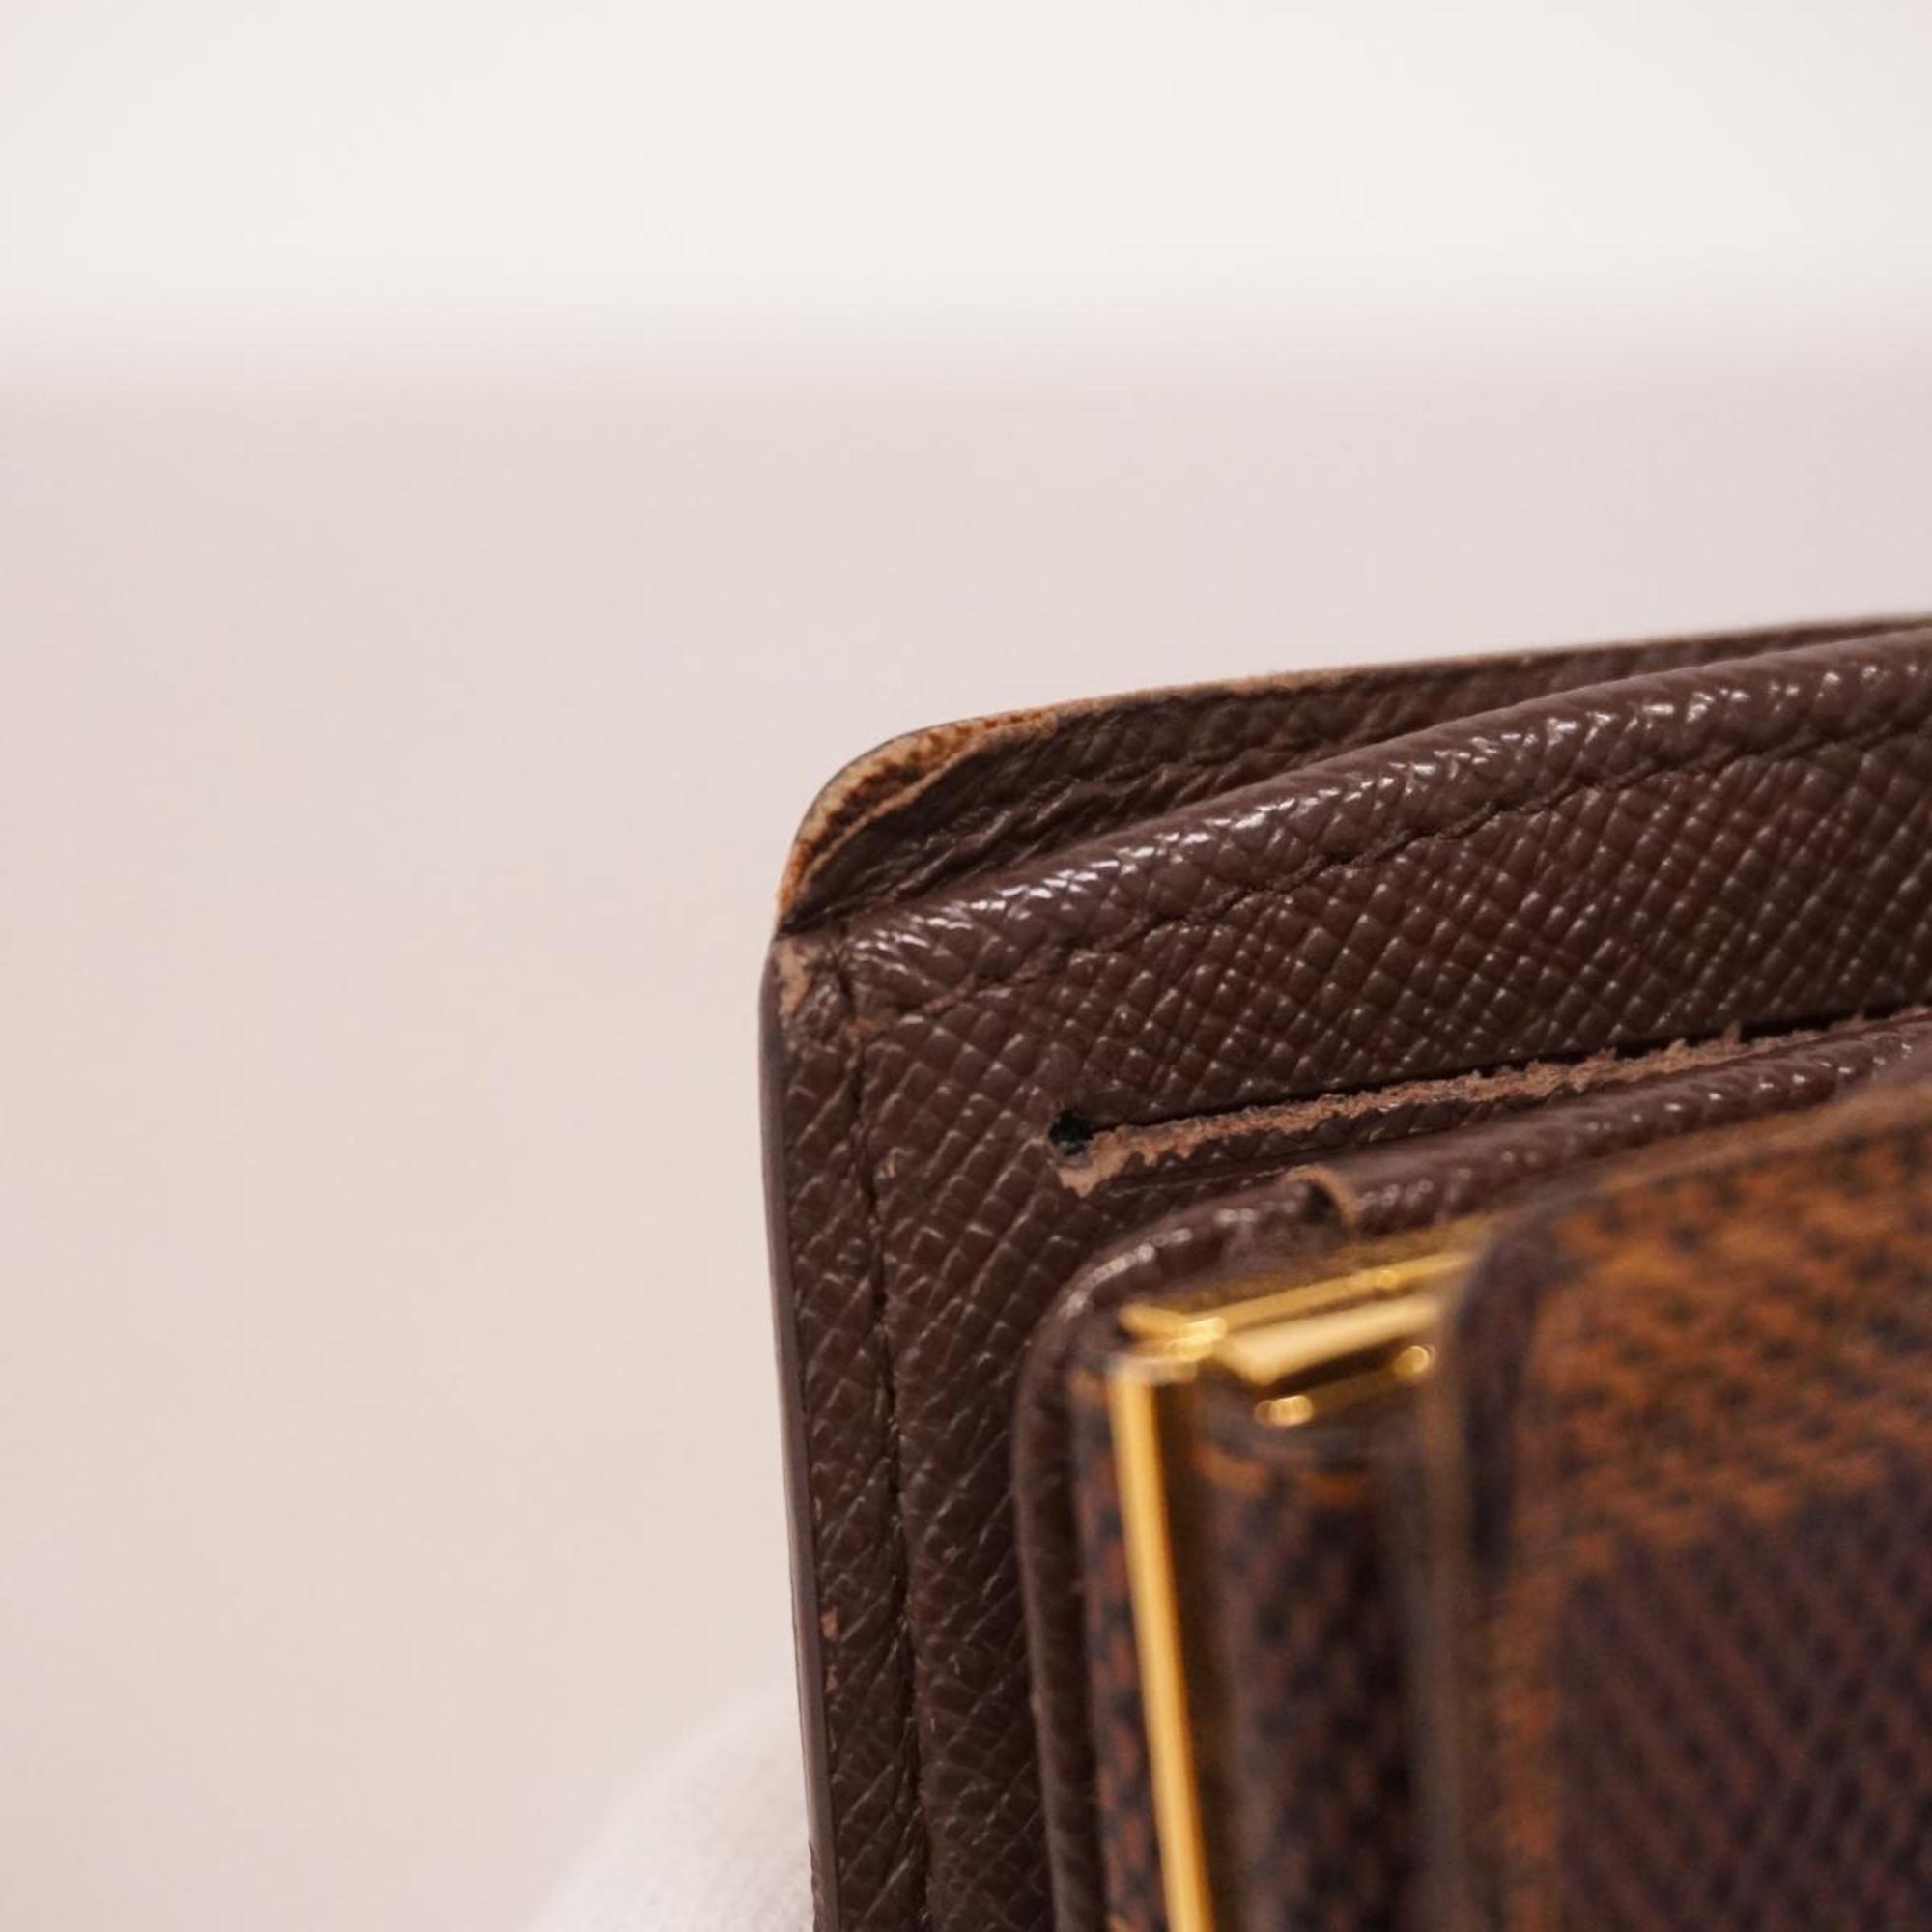 ルイ・ヴィトン(Louis Vuitton) ルイ・ヴィトン 財布 ダミエ ポルトフォイユヴィエノワ N61674 エベヌレディース